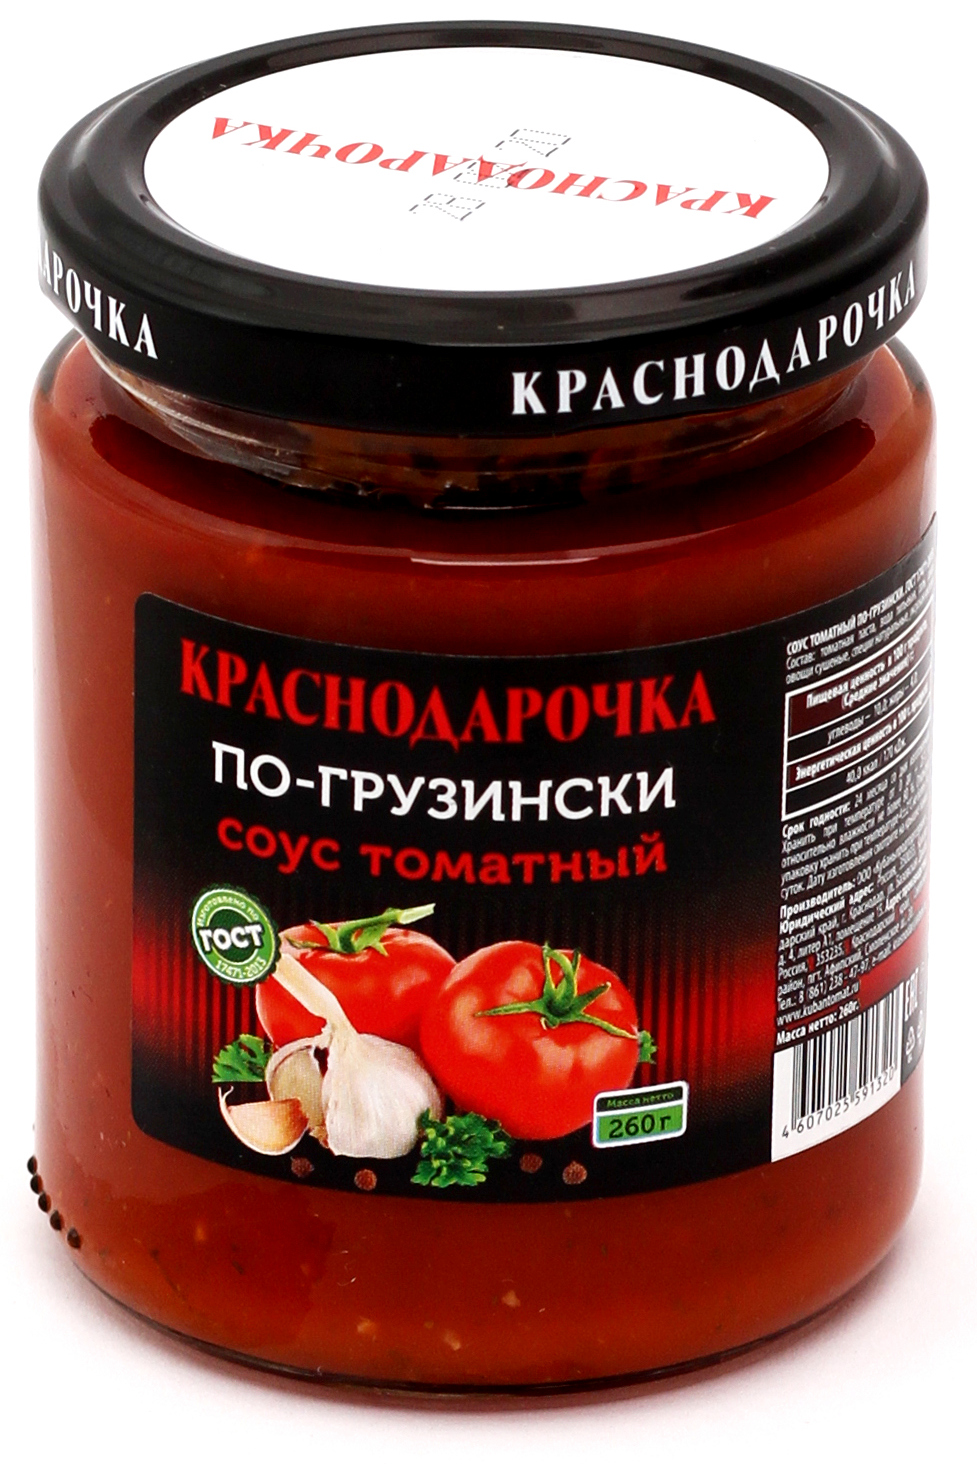 Соус томатный по-грузински "Краснодарочка" ГОСТ. Стеклобанка 260 г Евро